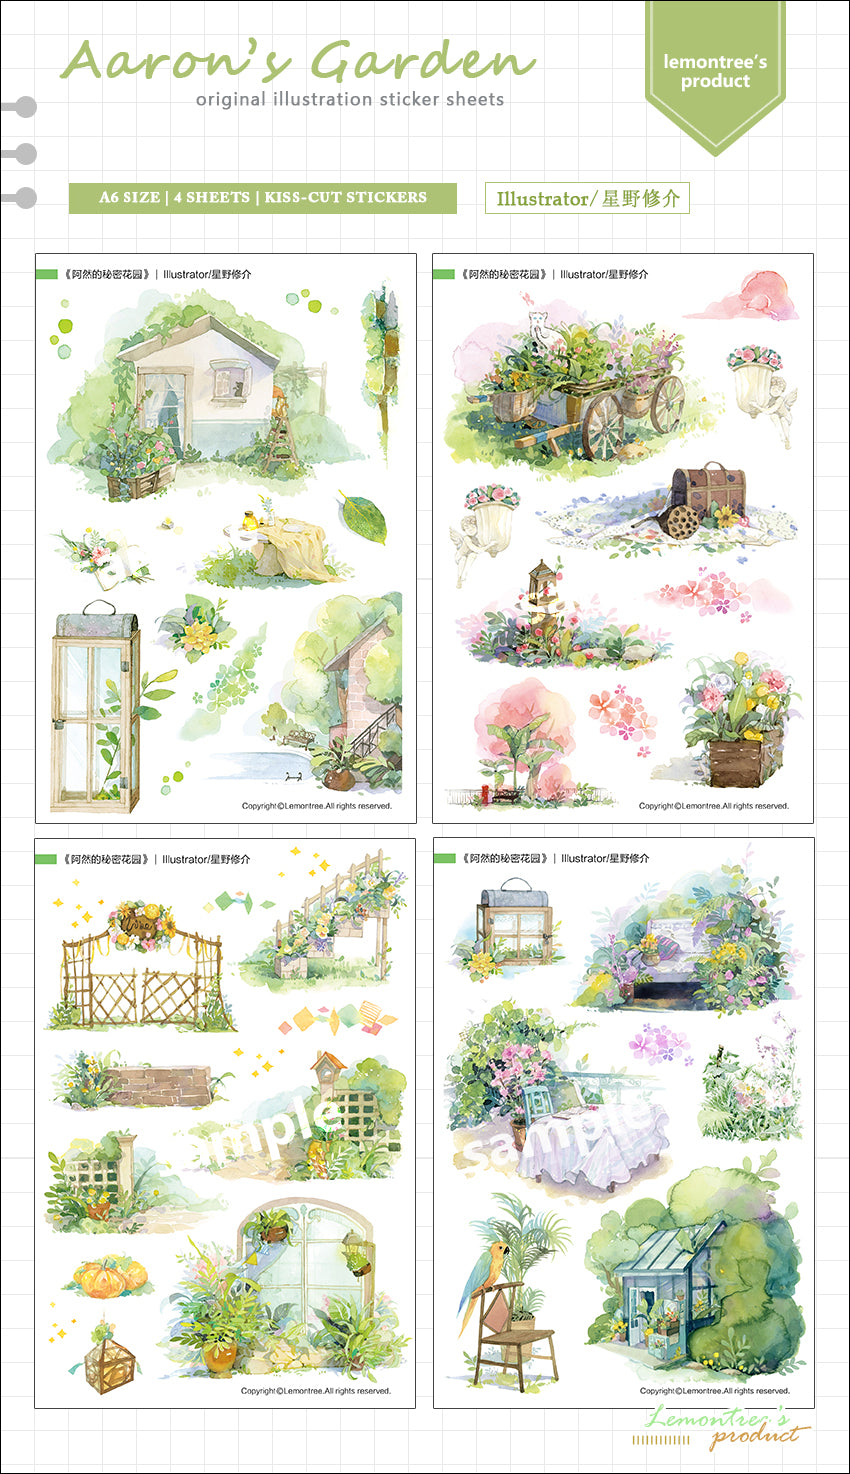 Lemontree Product: Aaron's Garden Sticker Sheets